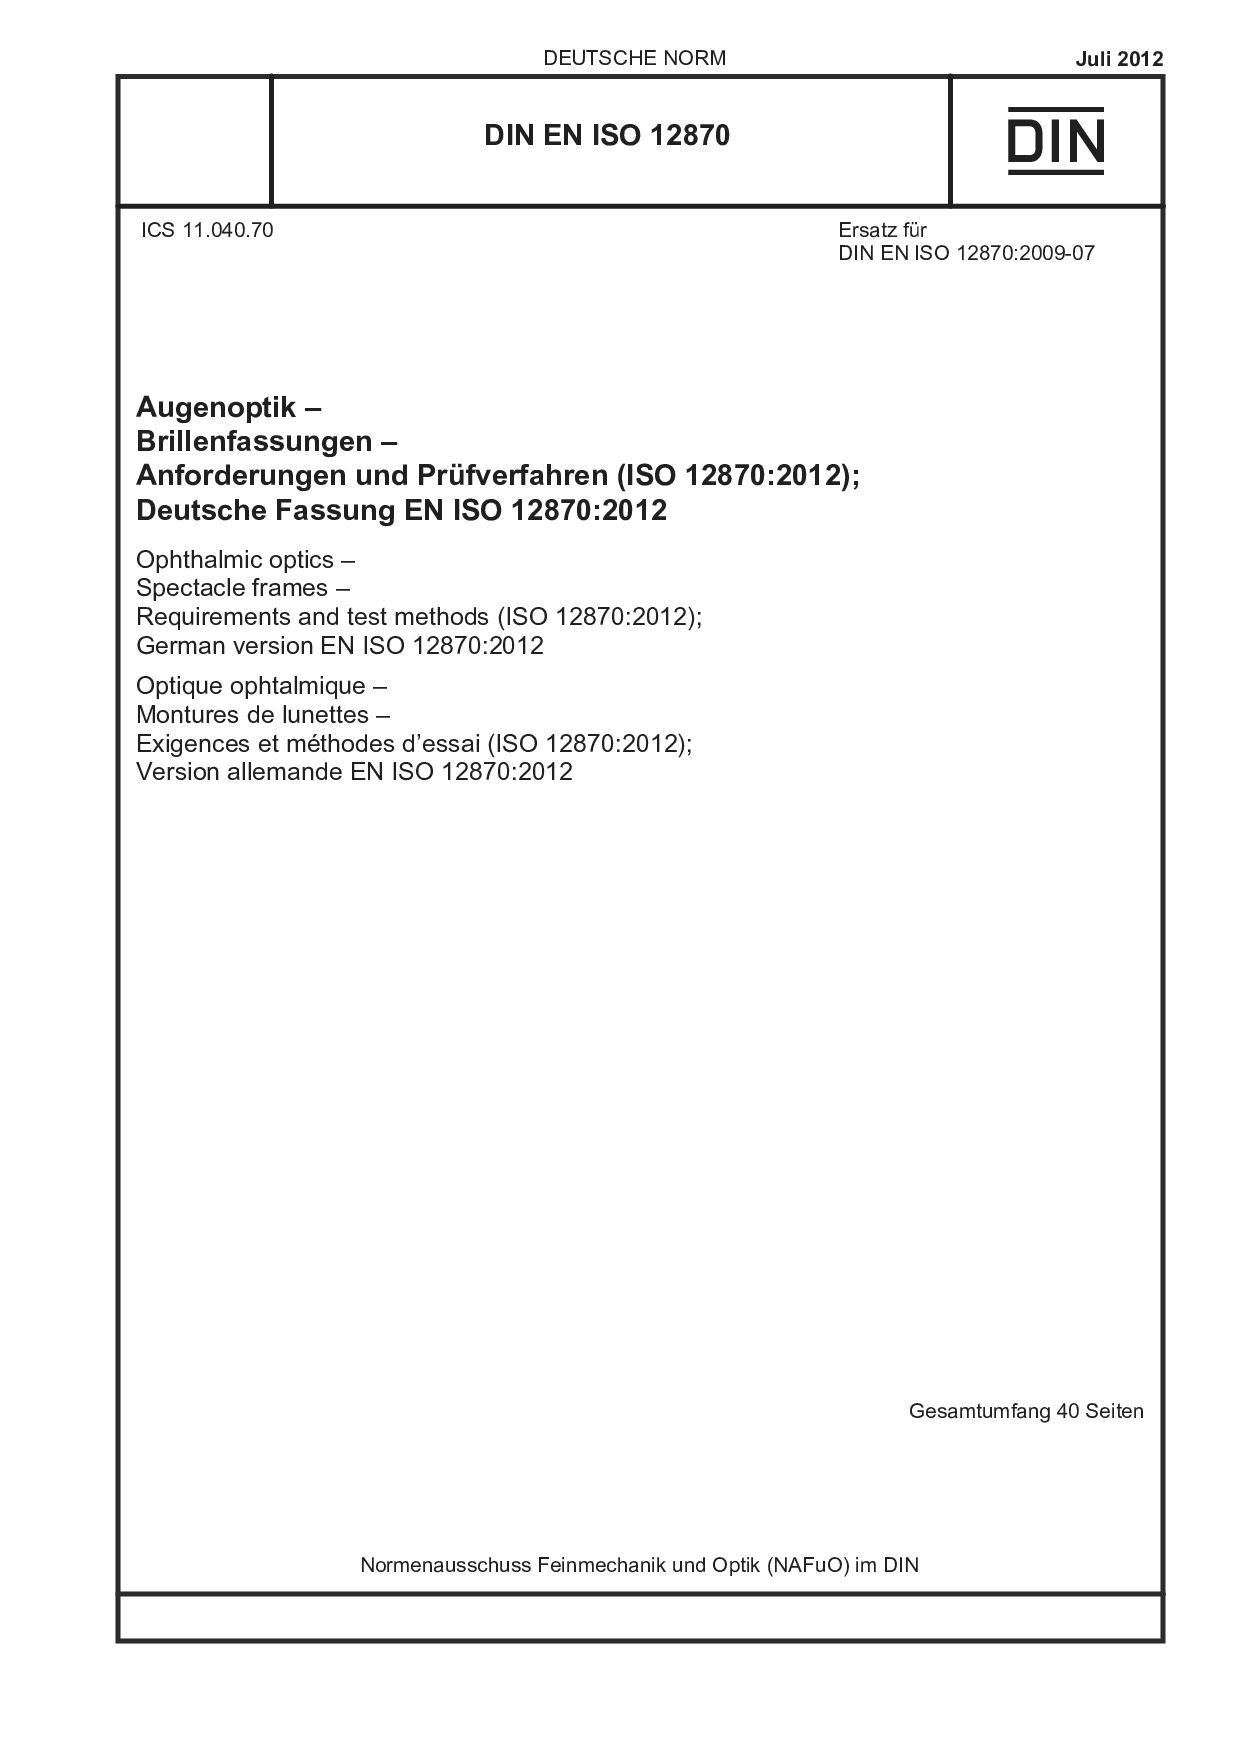 DIN EN ISO 12870:2012